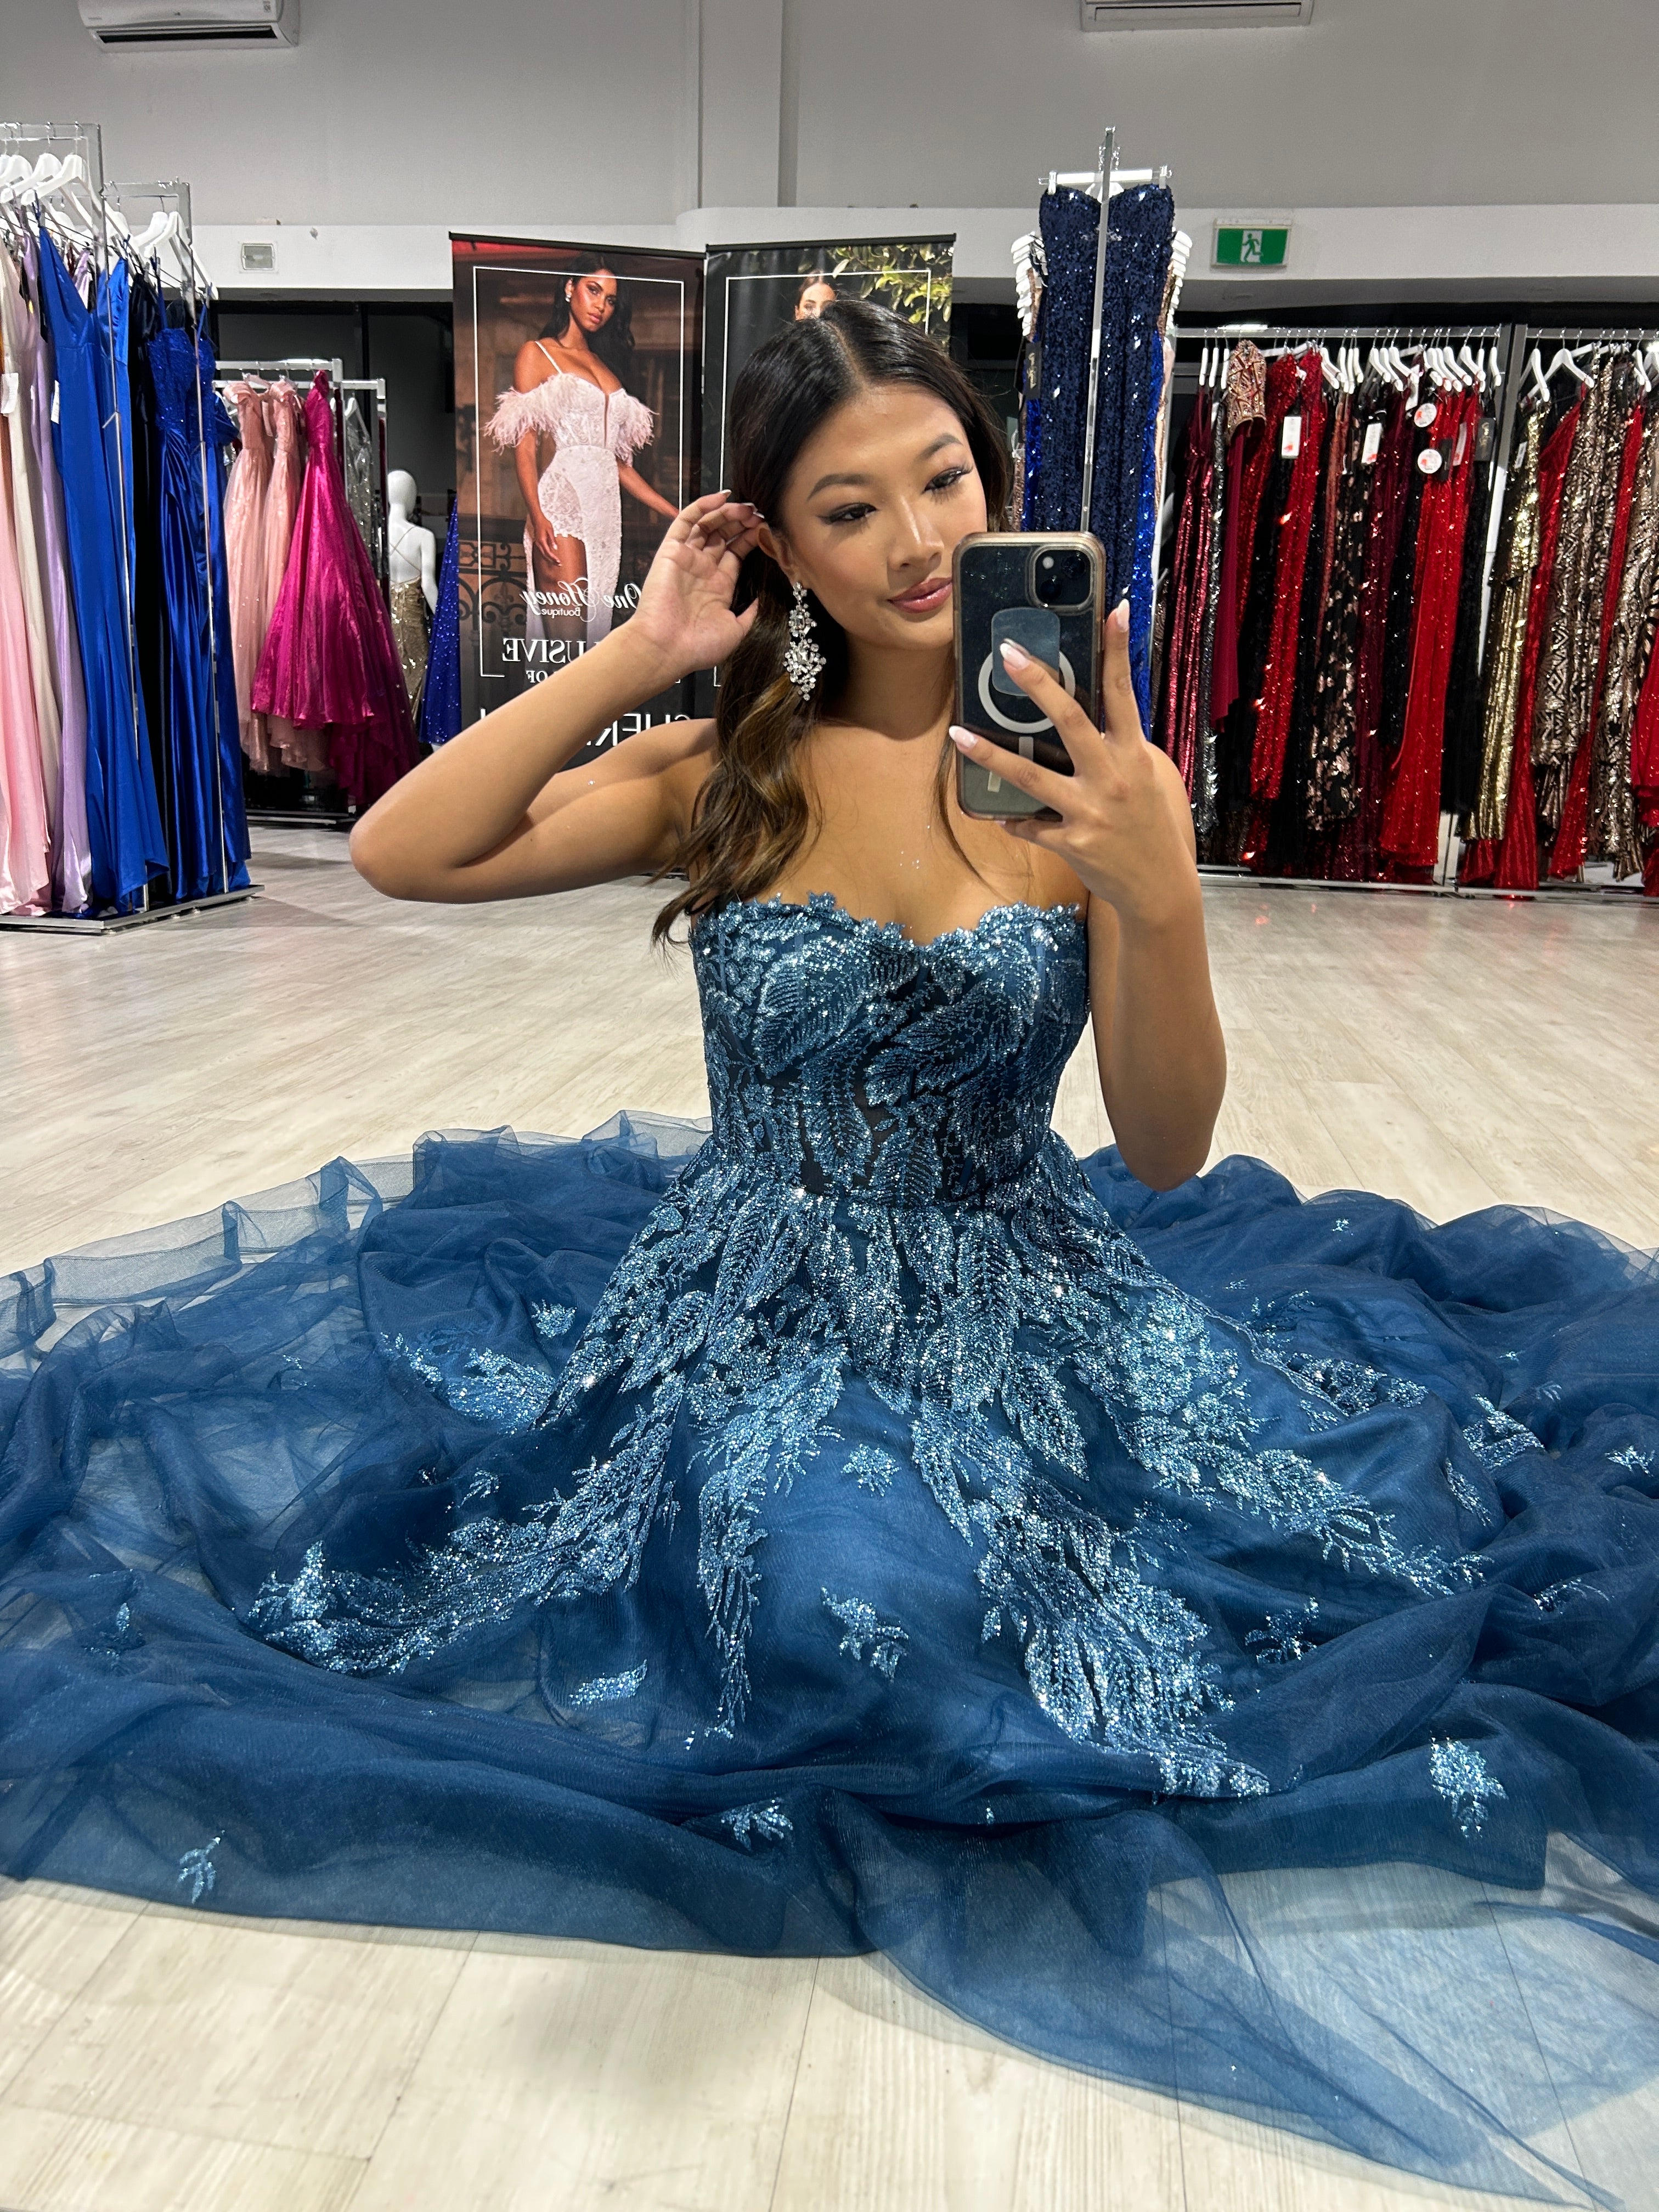 Honey Couture MERCER Lapis Blue Strapless Glitter Ball Gown Formal Dress